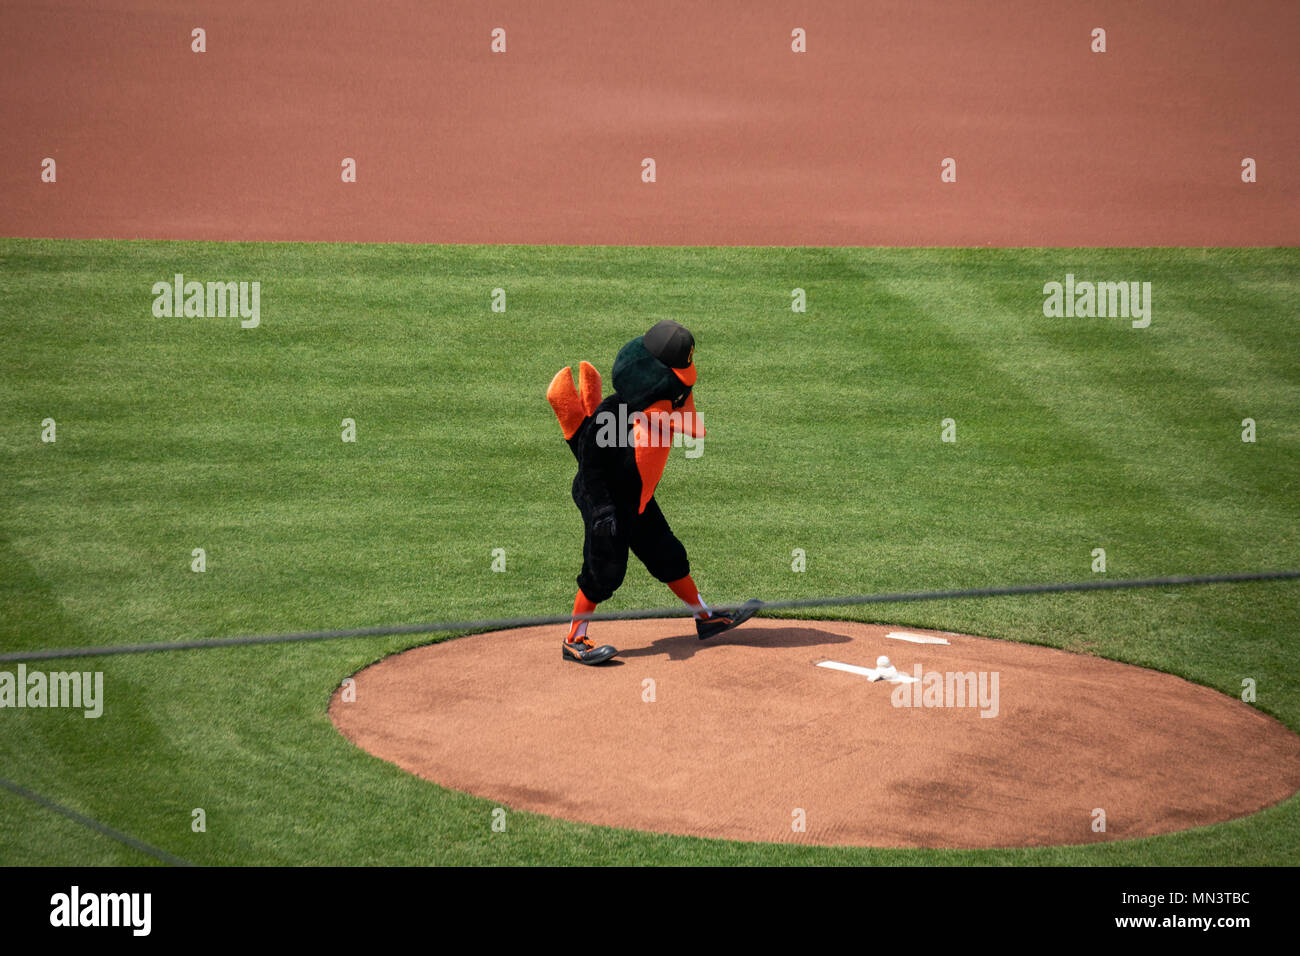 Baltimore, MD, USA - 12 mai 2018 - la mascotte des orioles de Baltimore, le pitching mound Camden Yard à Baltimore. Banque D'Images